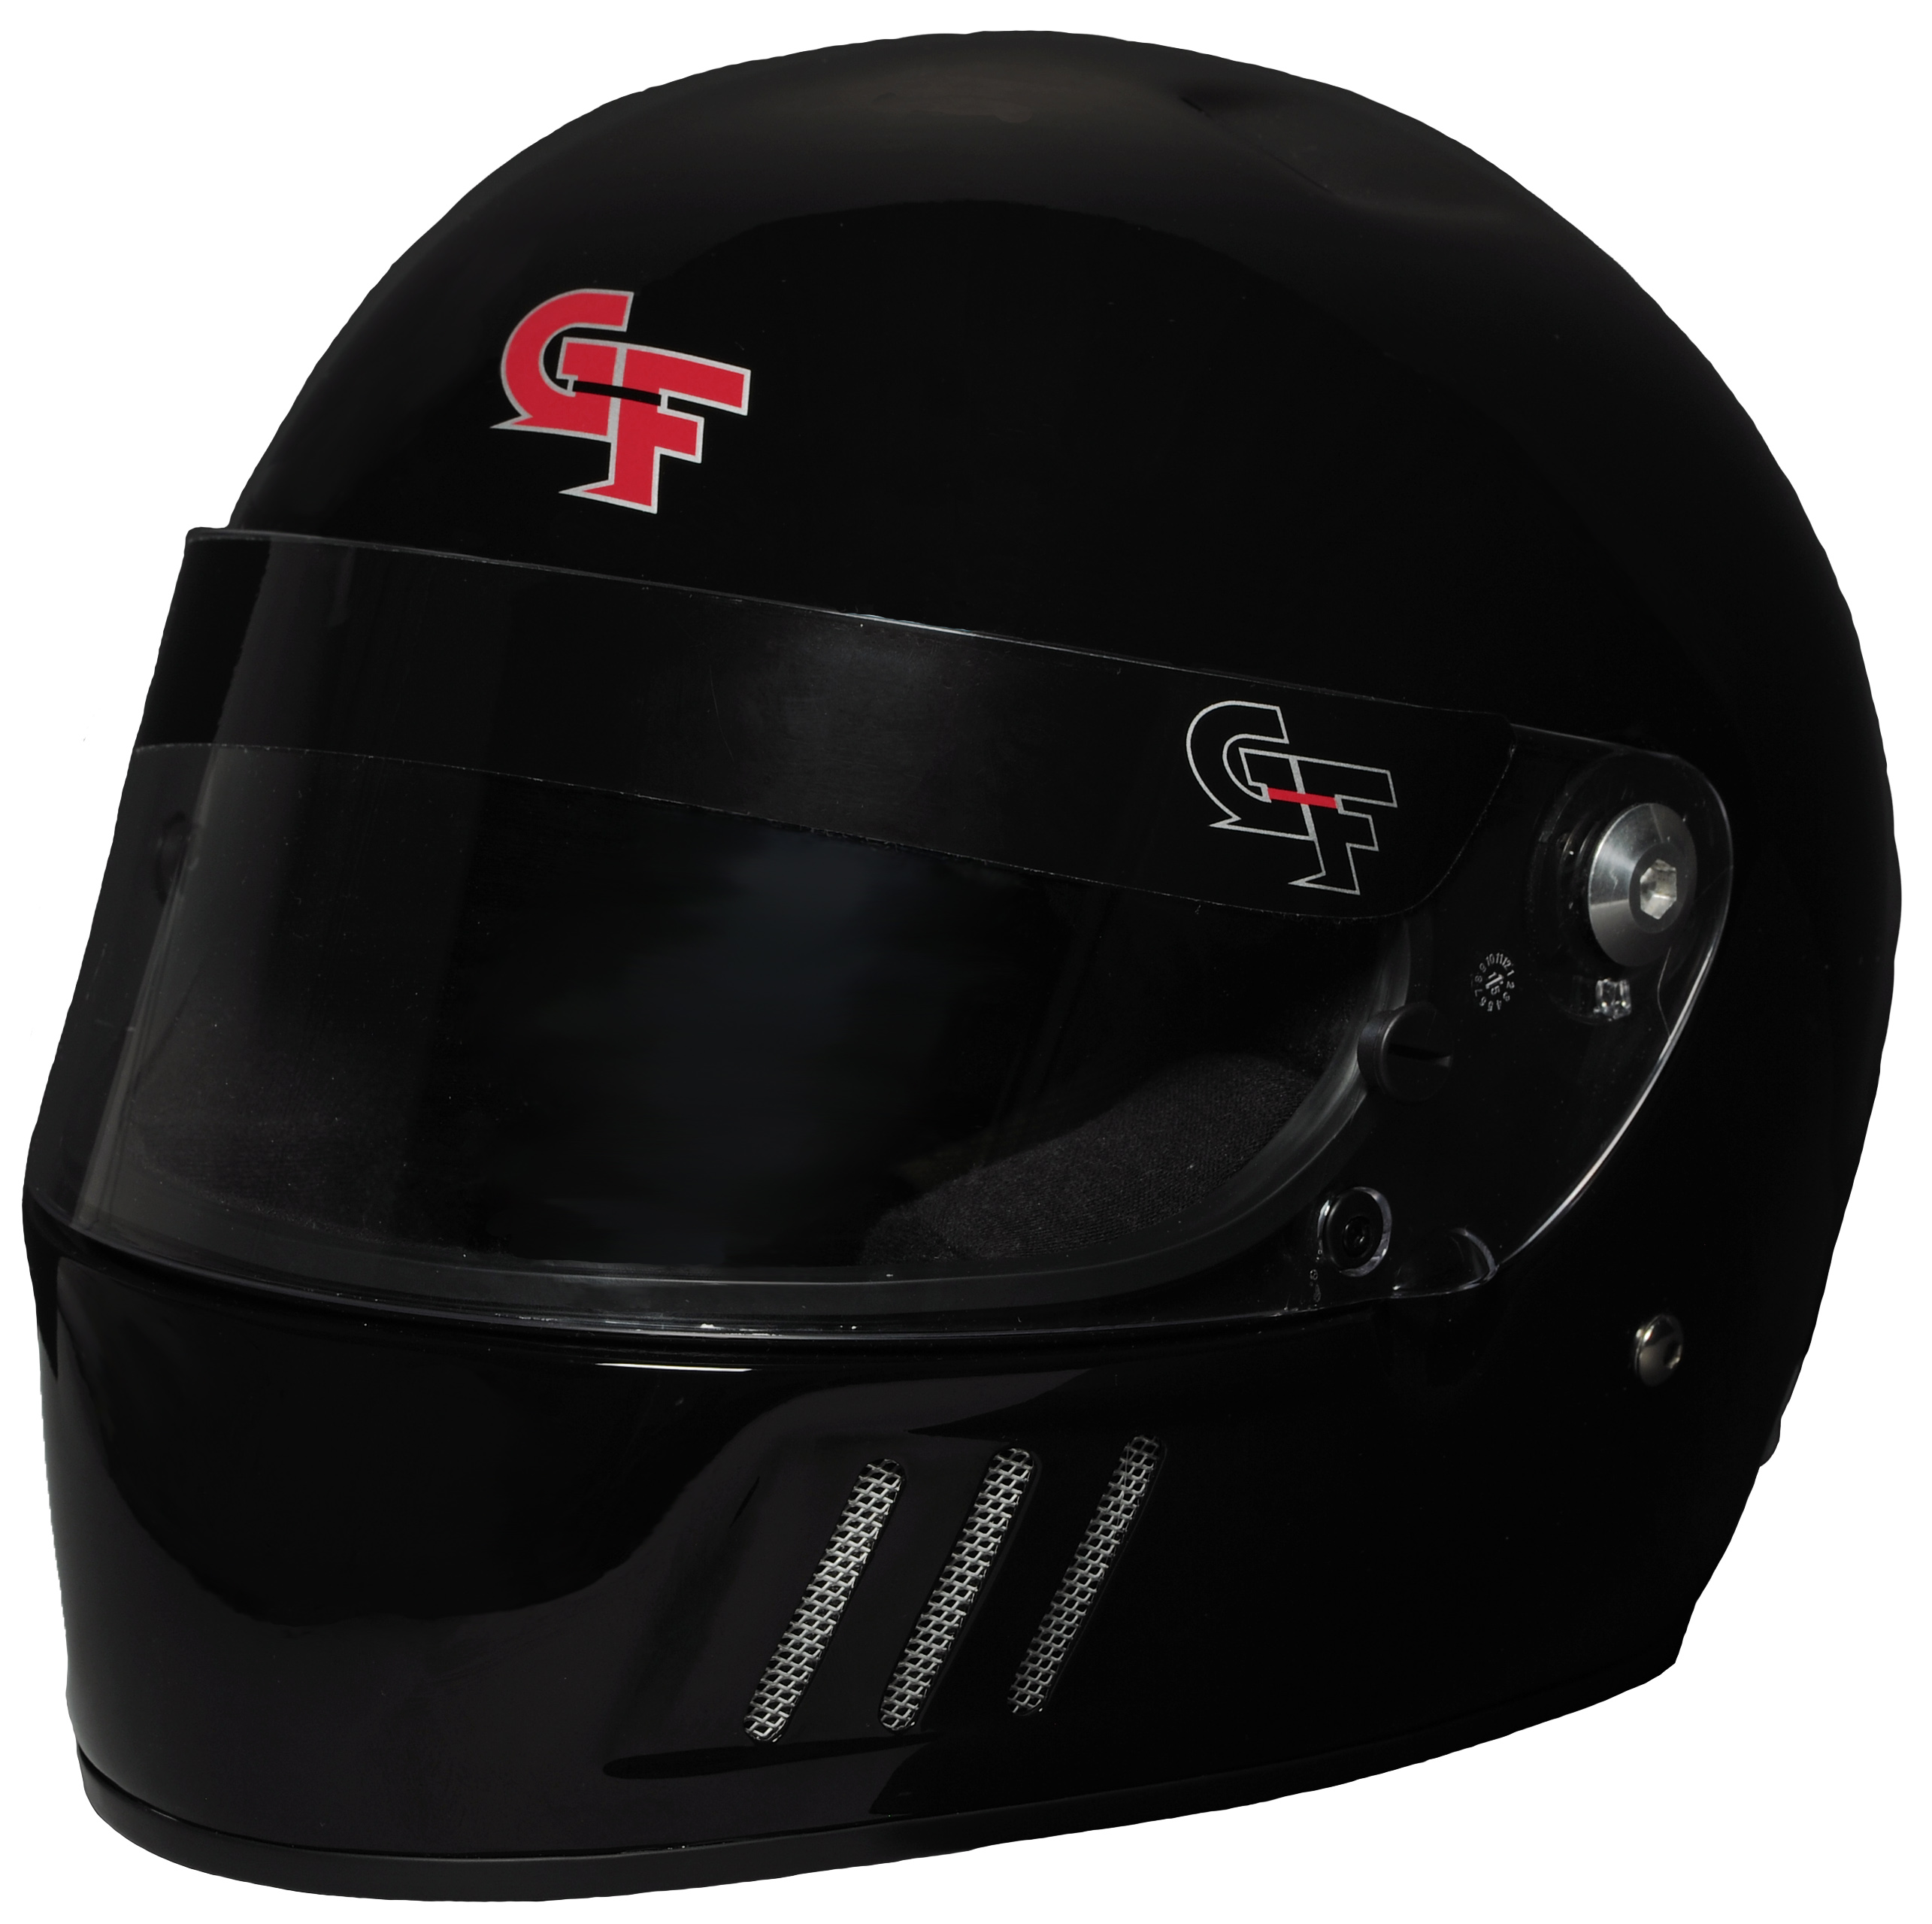 G-Force Racing Gear Helmet, GF3 FULL FACE MED BLACK SA2015